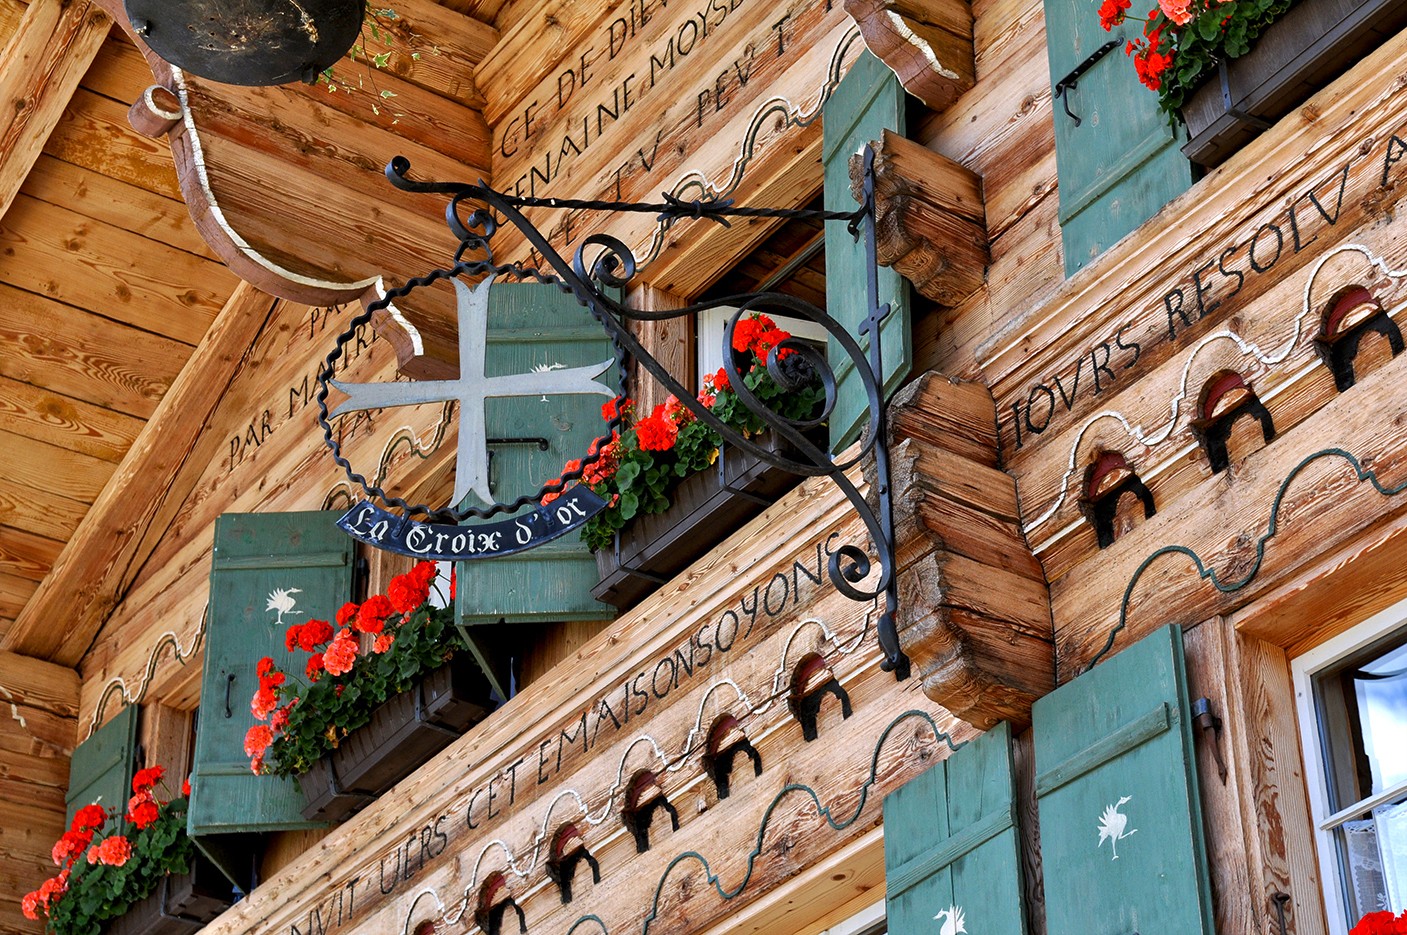 Zahlreiche Inschriften und Ornamente schmücken die Fassade des Restaurants La Croix d’Or.